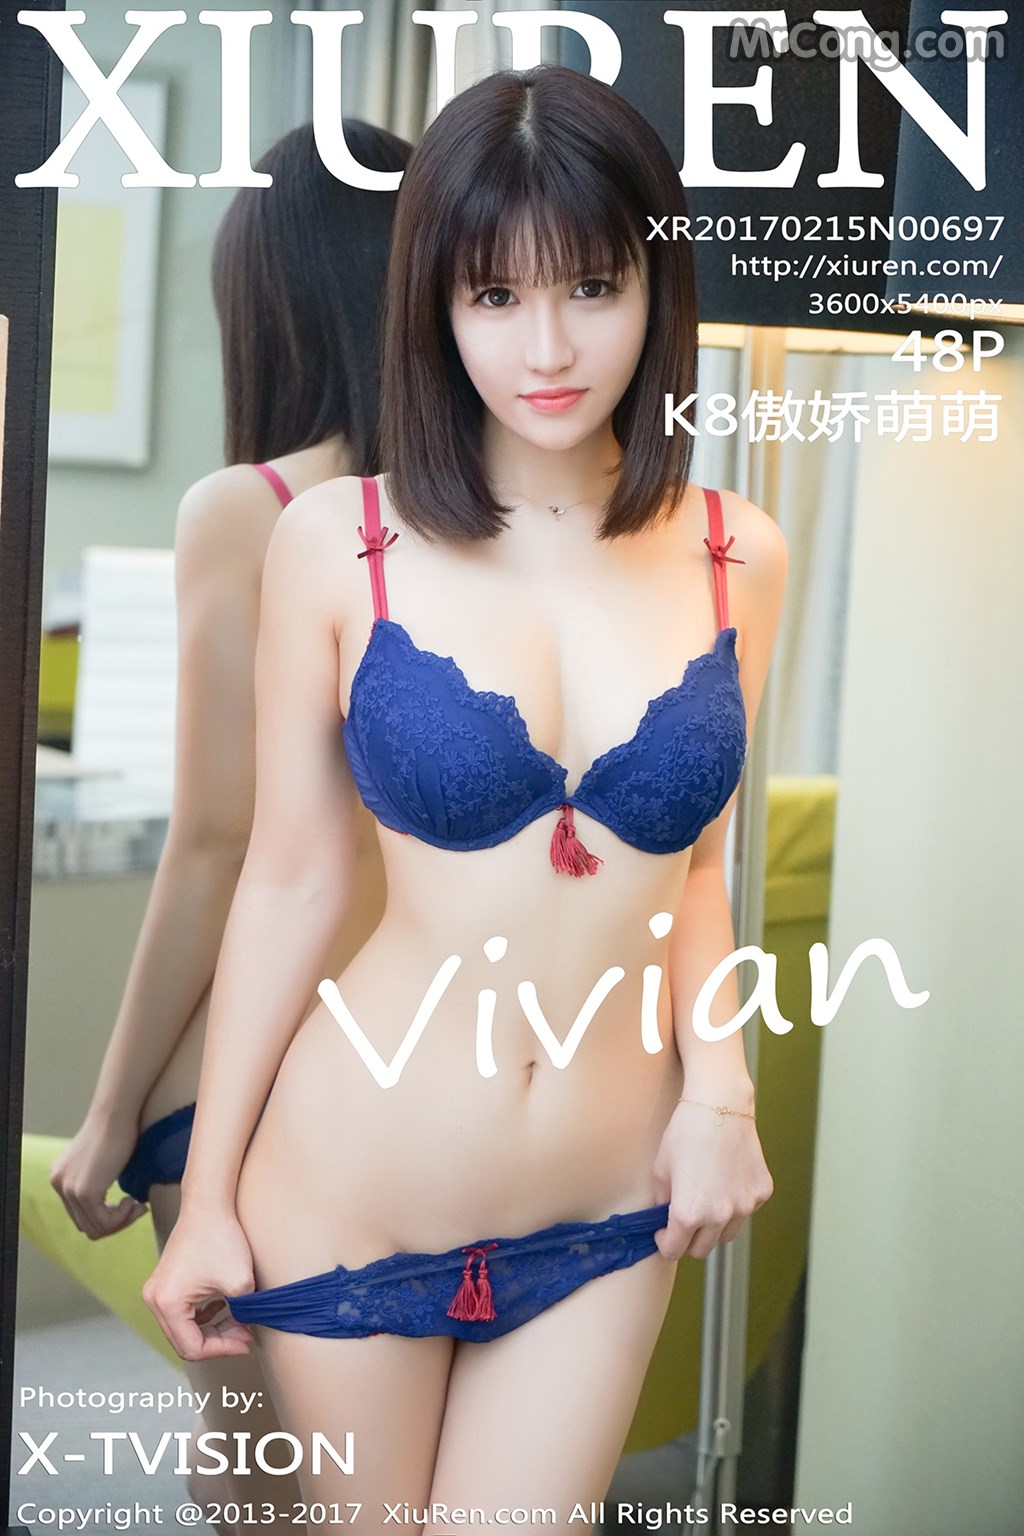 XIUREN No. 687: Model Aojiao Meng Meng (K8 傲 娇 萌萌 Vivian) (49 photos) photo 1-0